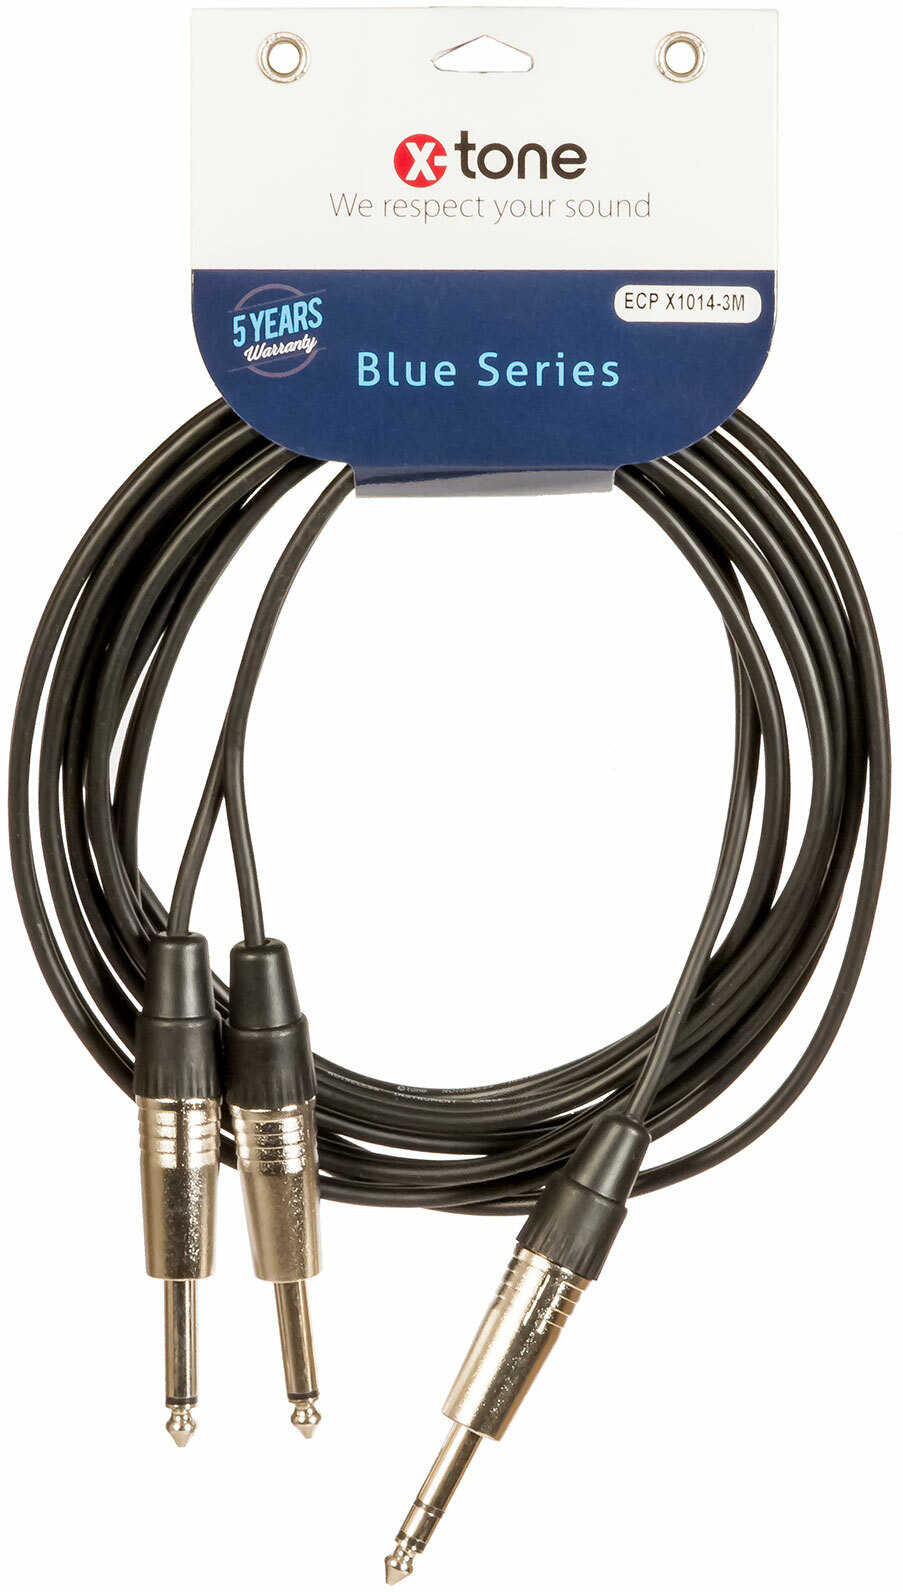 X-tone Jack St / 2 Jack 3m Blue Series (x1014-3m) - Cable - Main picture